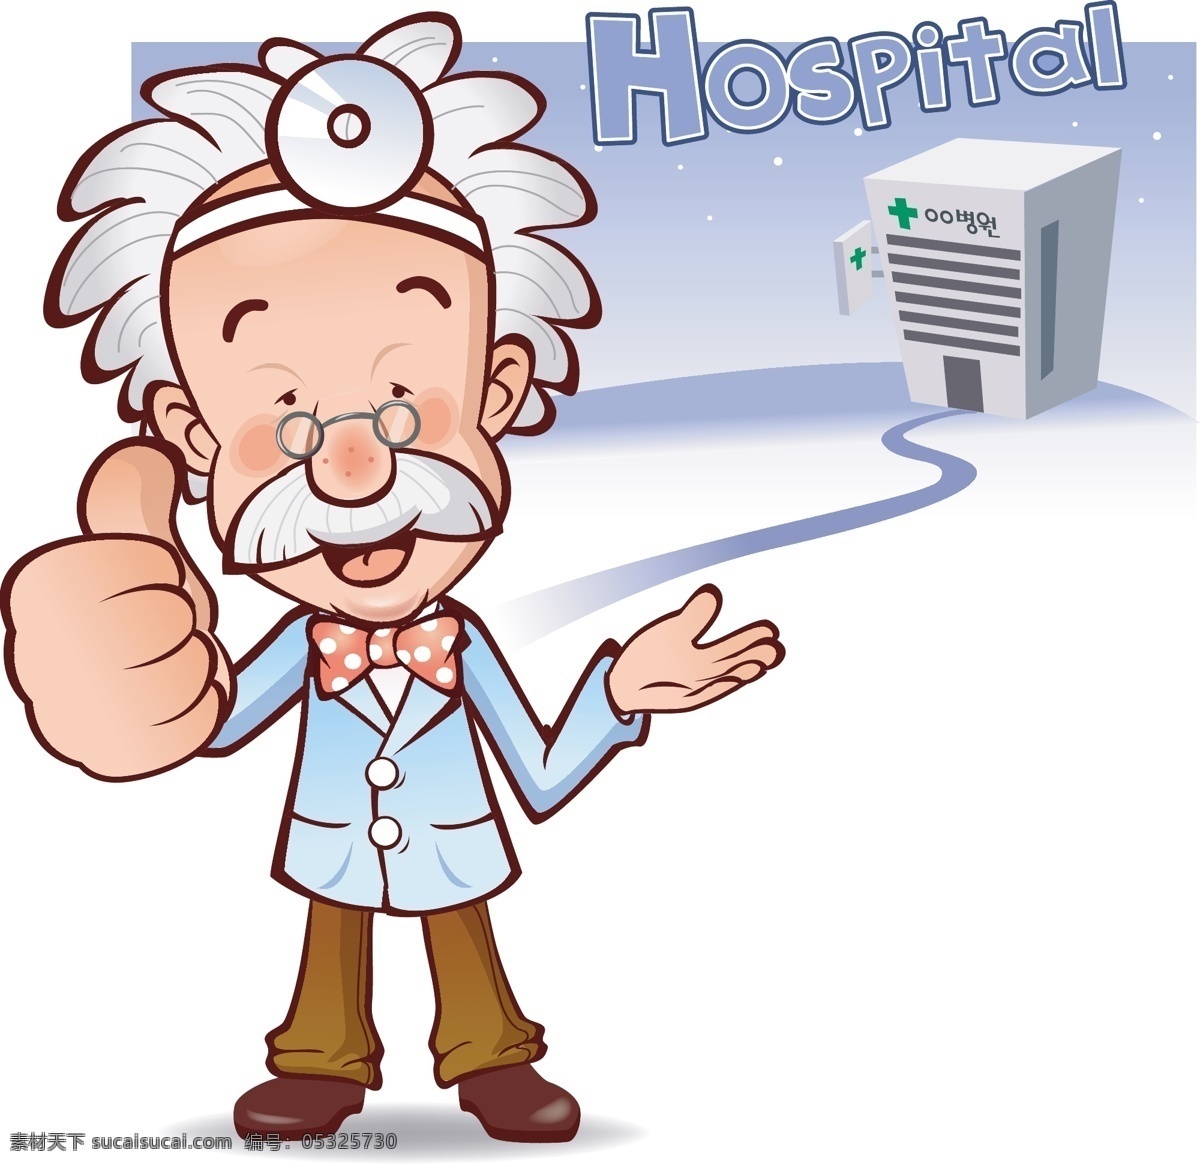 医生 医院 卡通 动漫 插画 顶呱呱 动漫动画 动漫人物 和谐 十字标志 医护人员 友善 棒棒 好医院 可爱